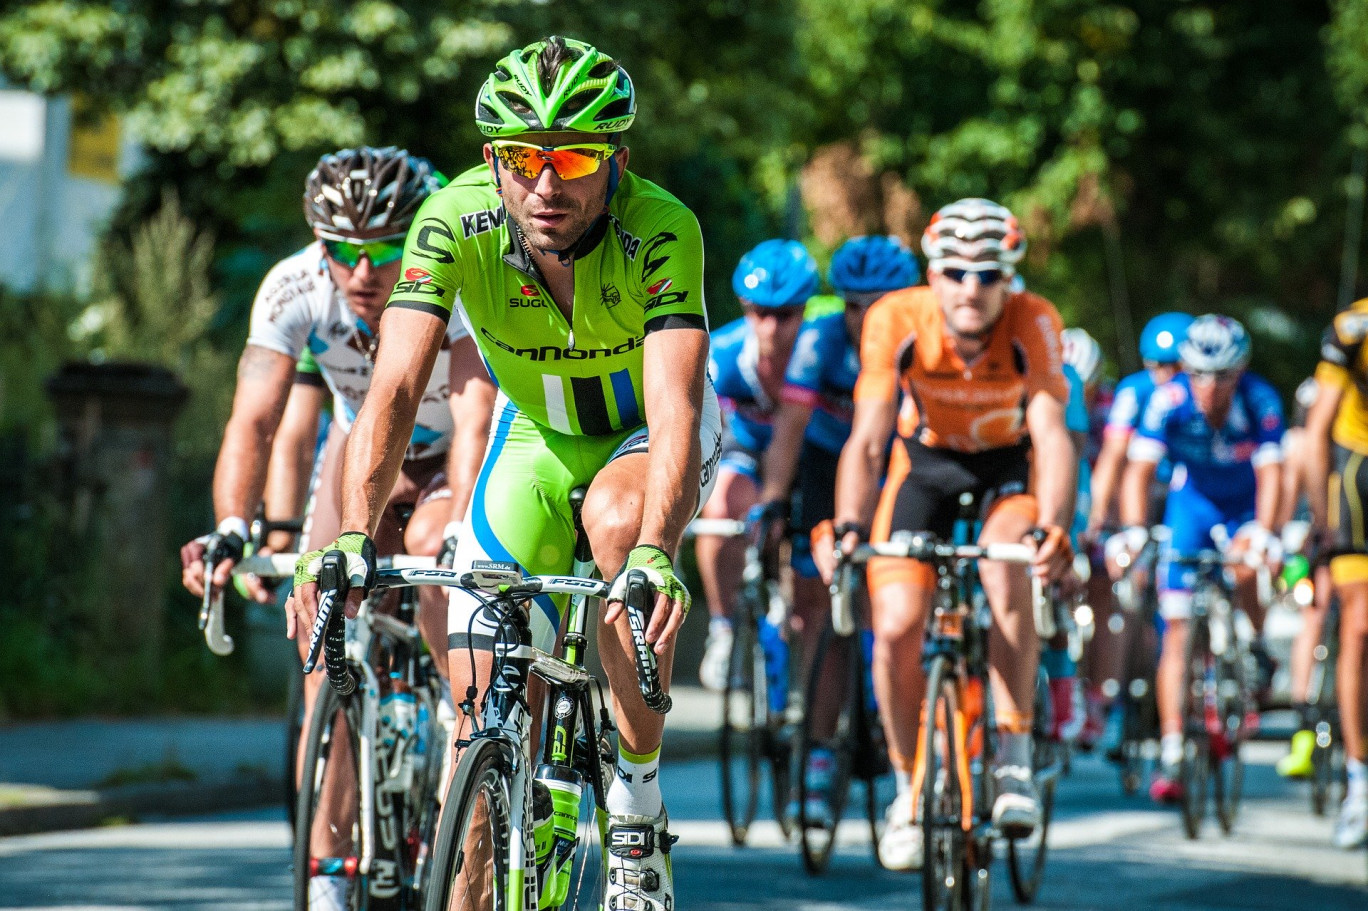 Épinal organisera les championnats de France de cyclisme sur route